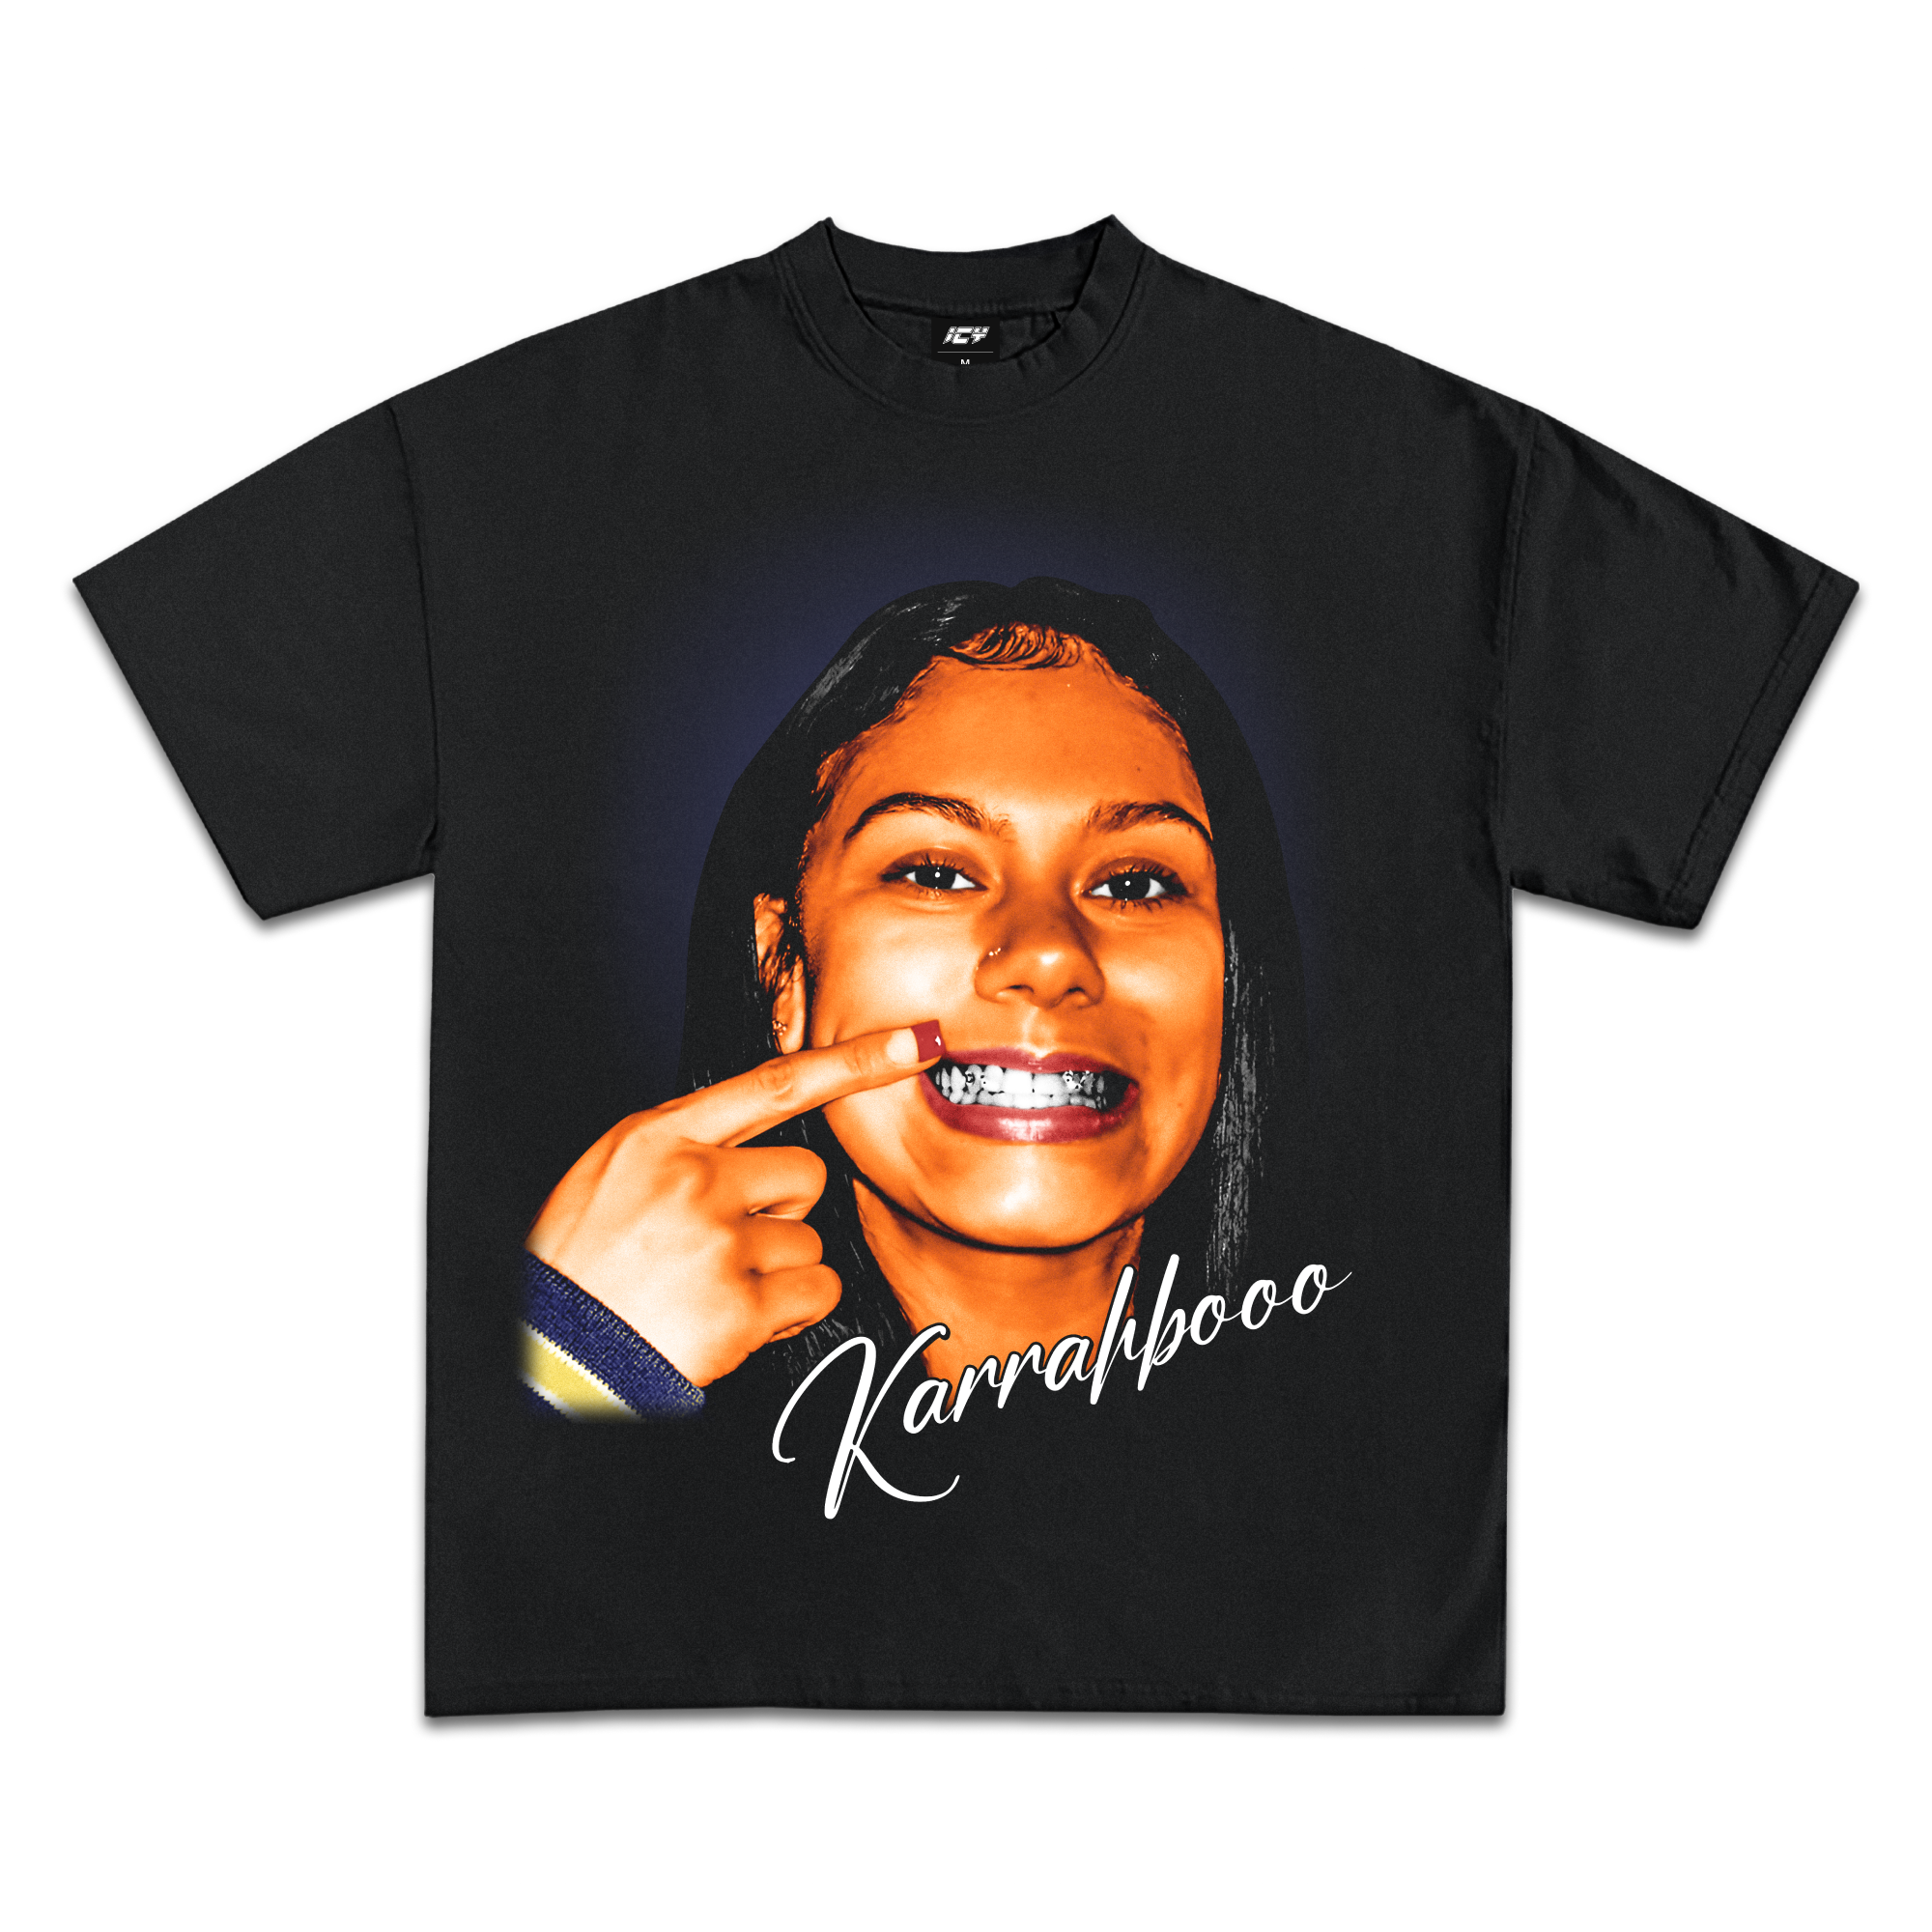 Karrahbooo Graphic T-Shirt